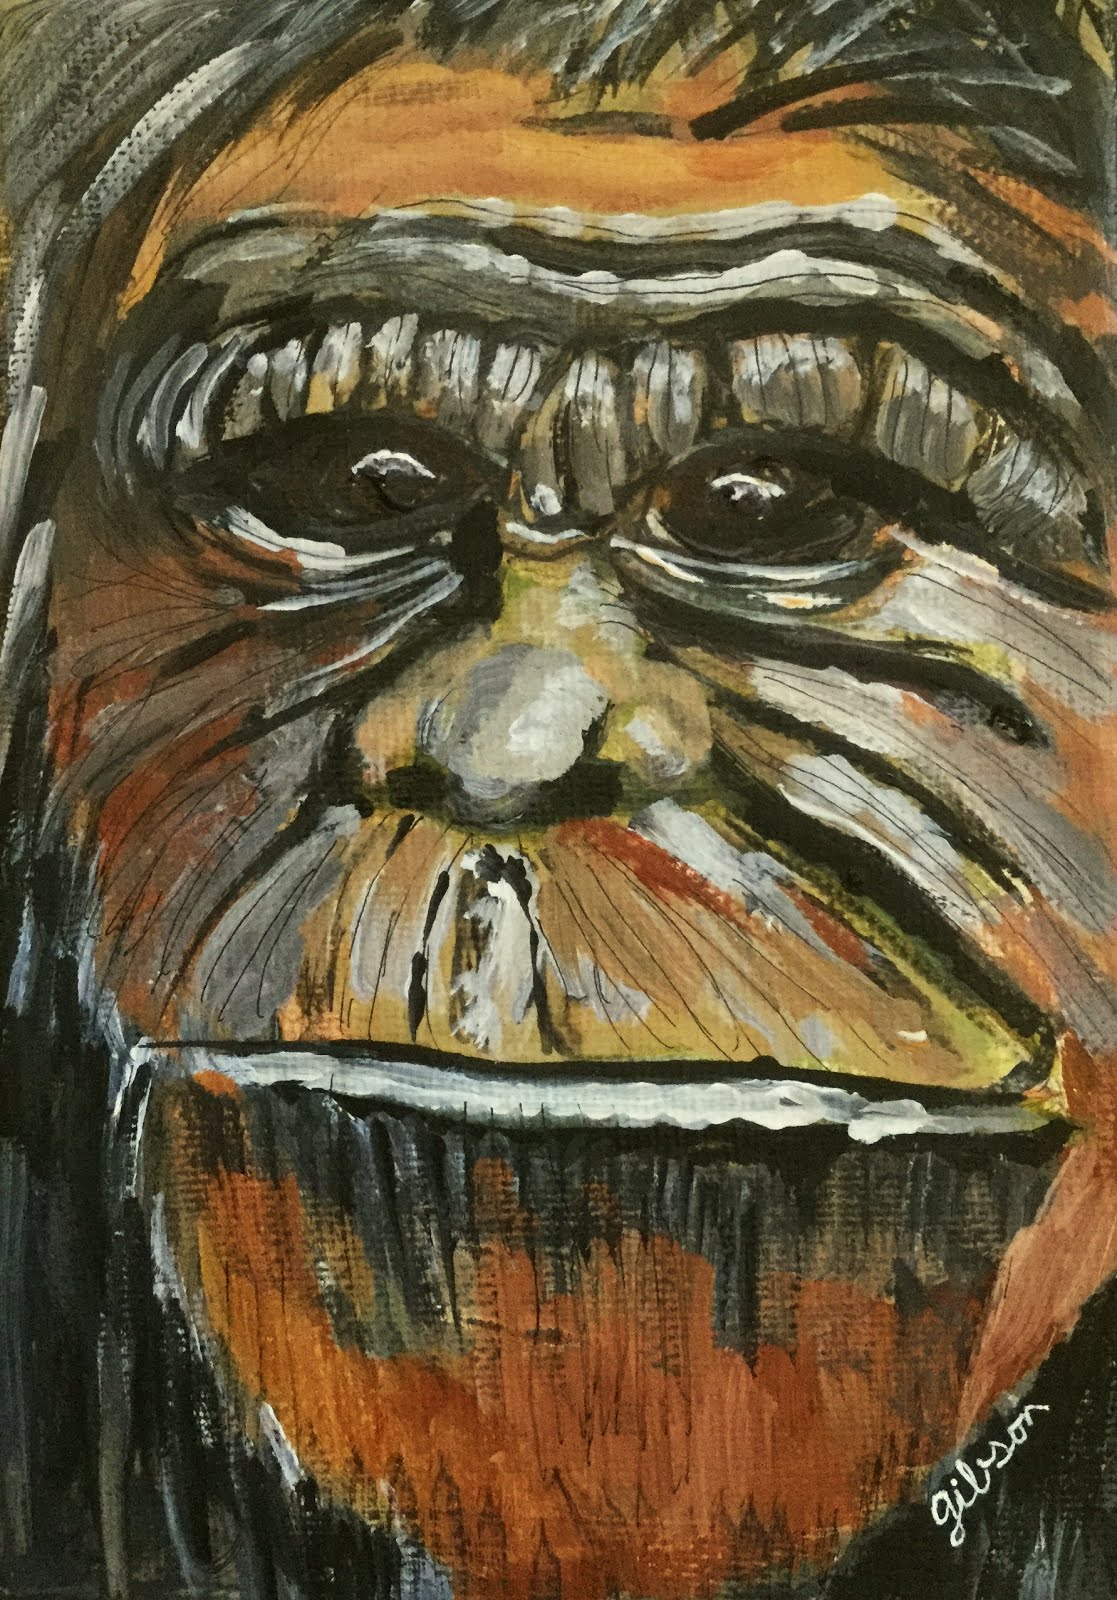 Wood Ape